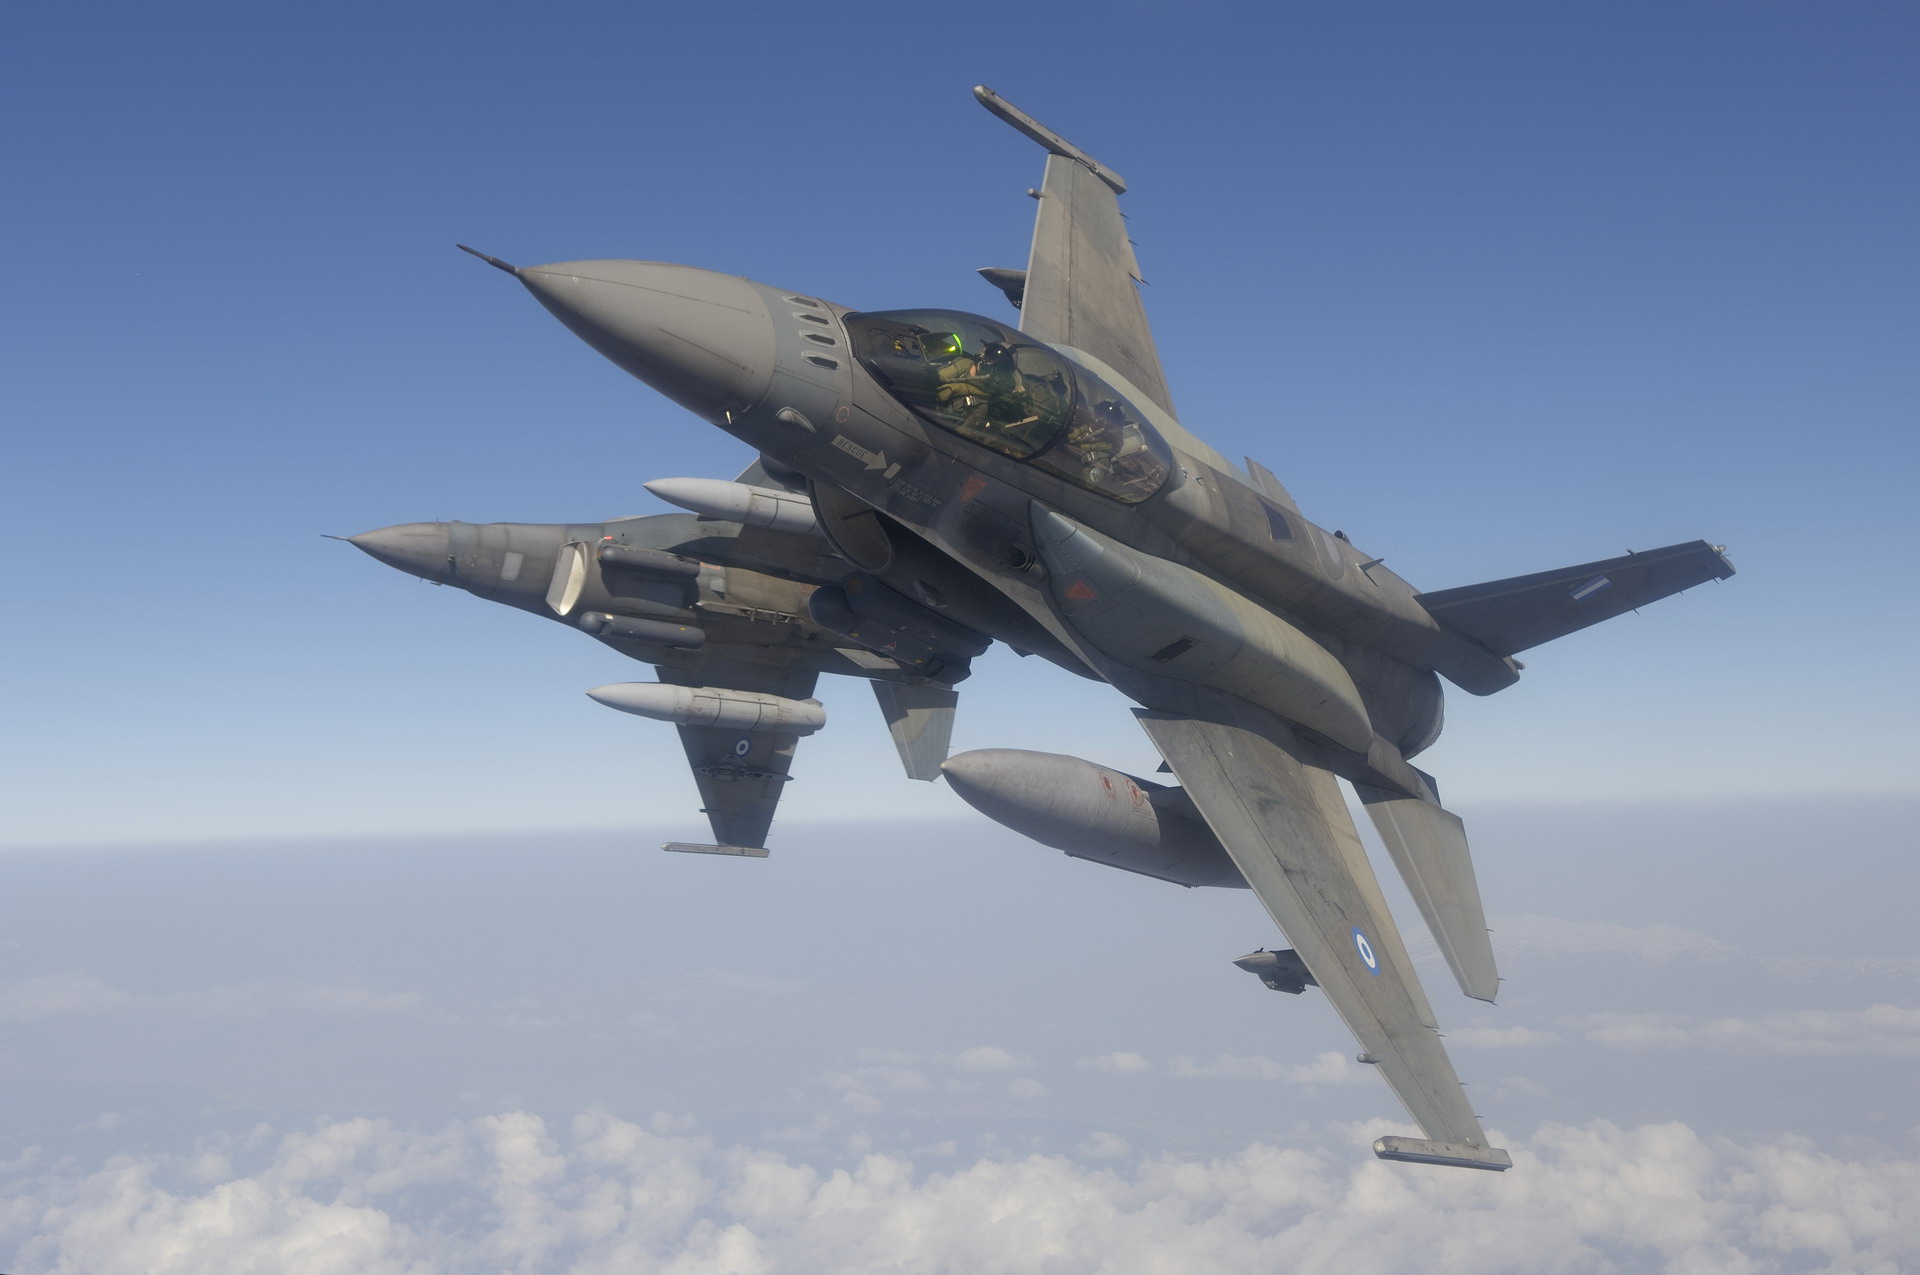 Greek F-16 fighter jet in flight.